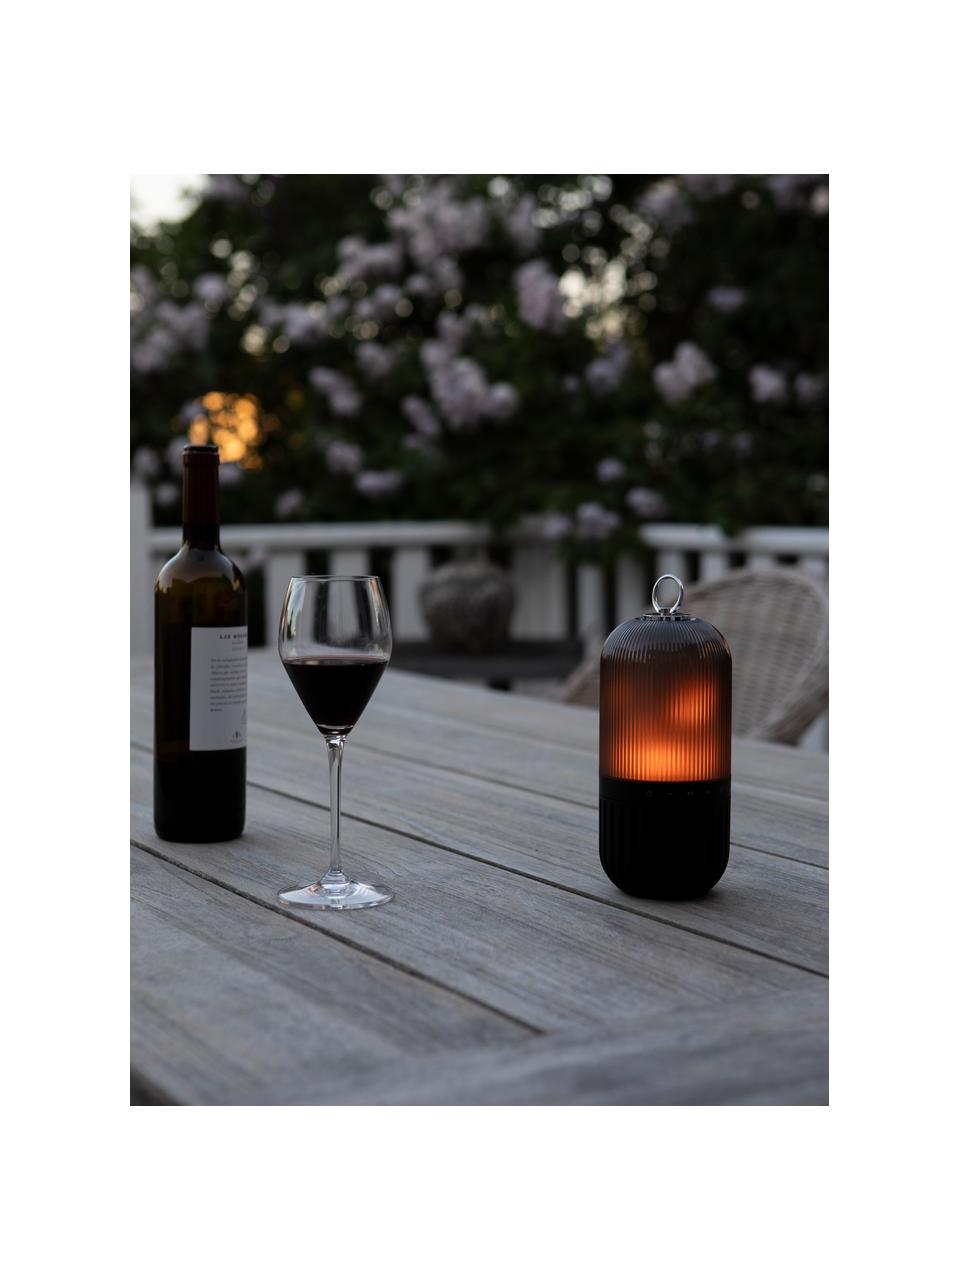 Aussenleuchte New Flame für Boden, Tisch oder zum Hängen, Lampenschirm: Kunststoff, Schwarz, Transparent, Ø 10 x H 88 cm